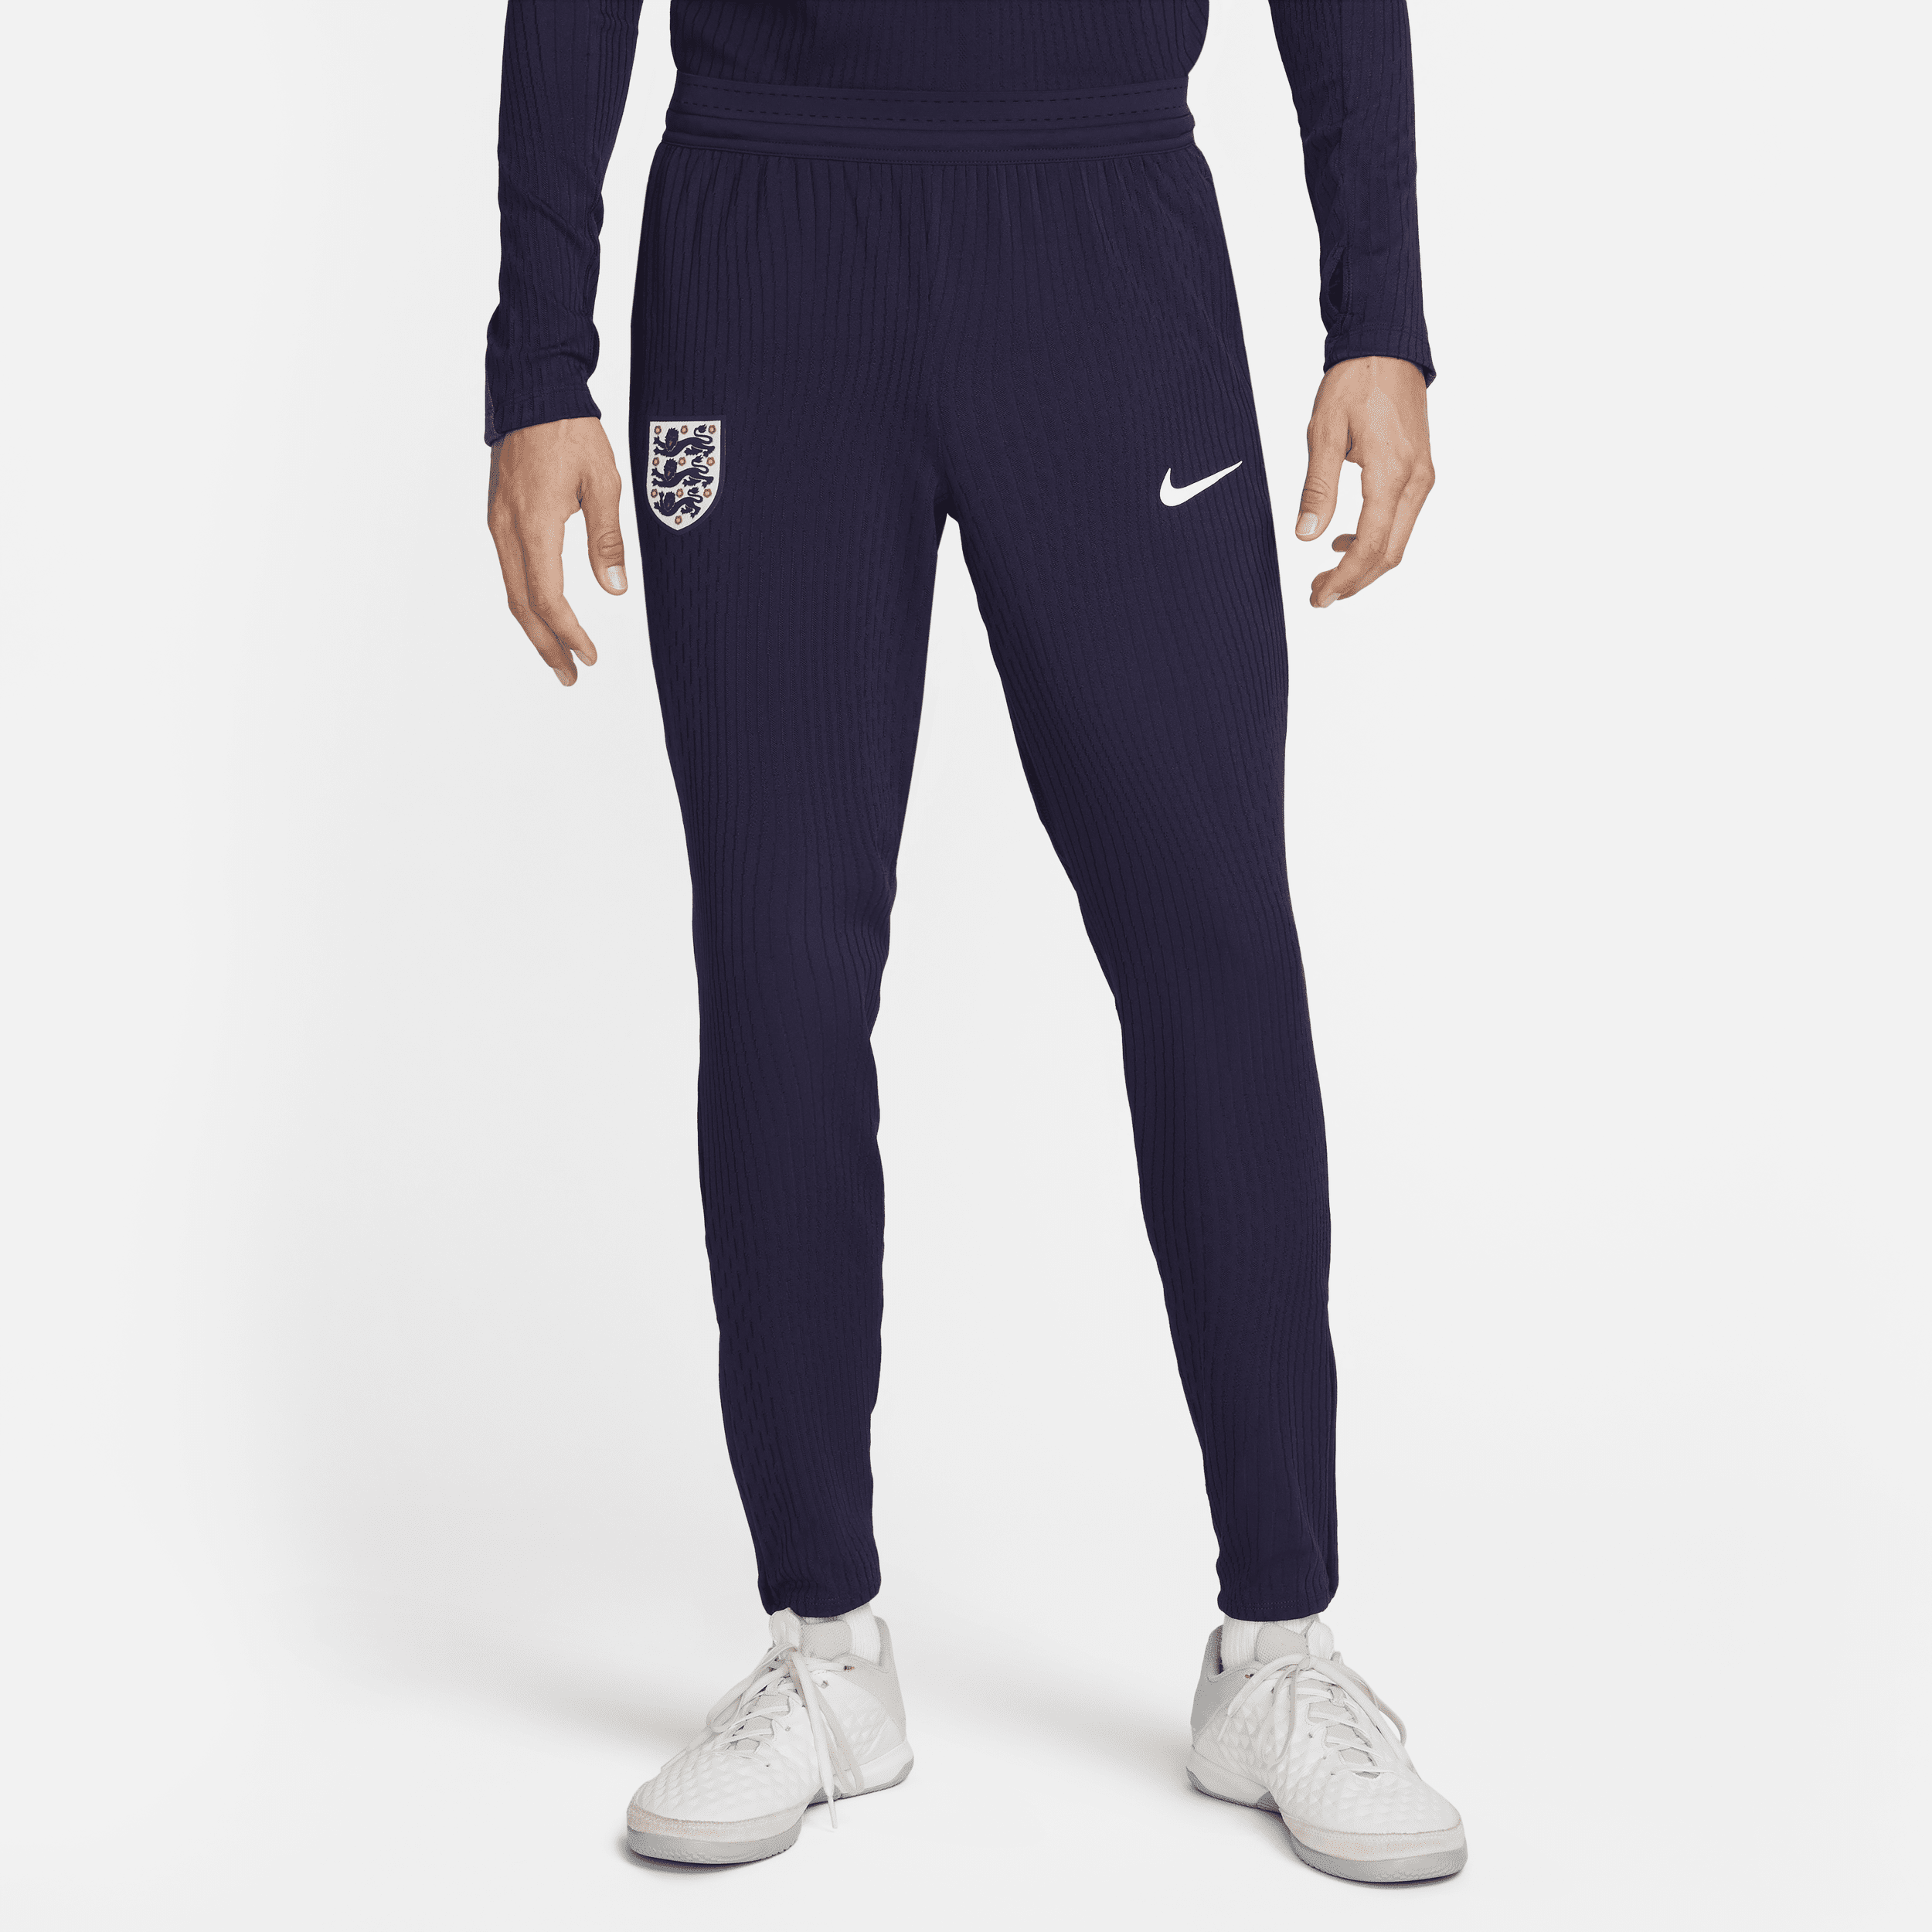 Engeland Strike Elite Nike Dri-FIT ADV knit voetbalbroek voor heren - Paars